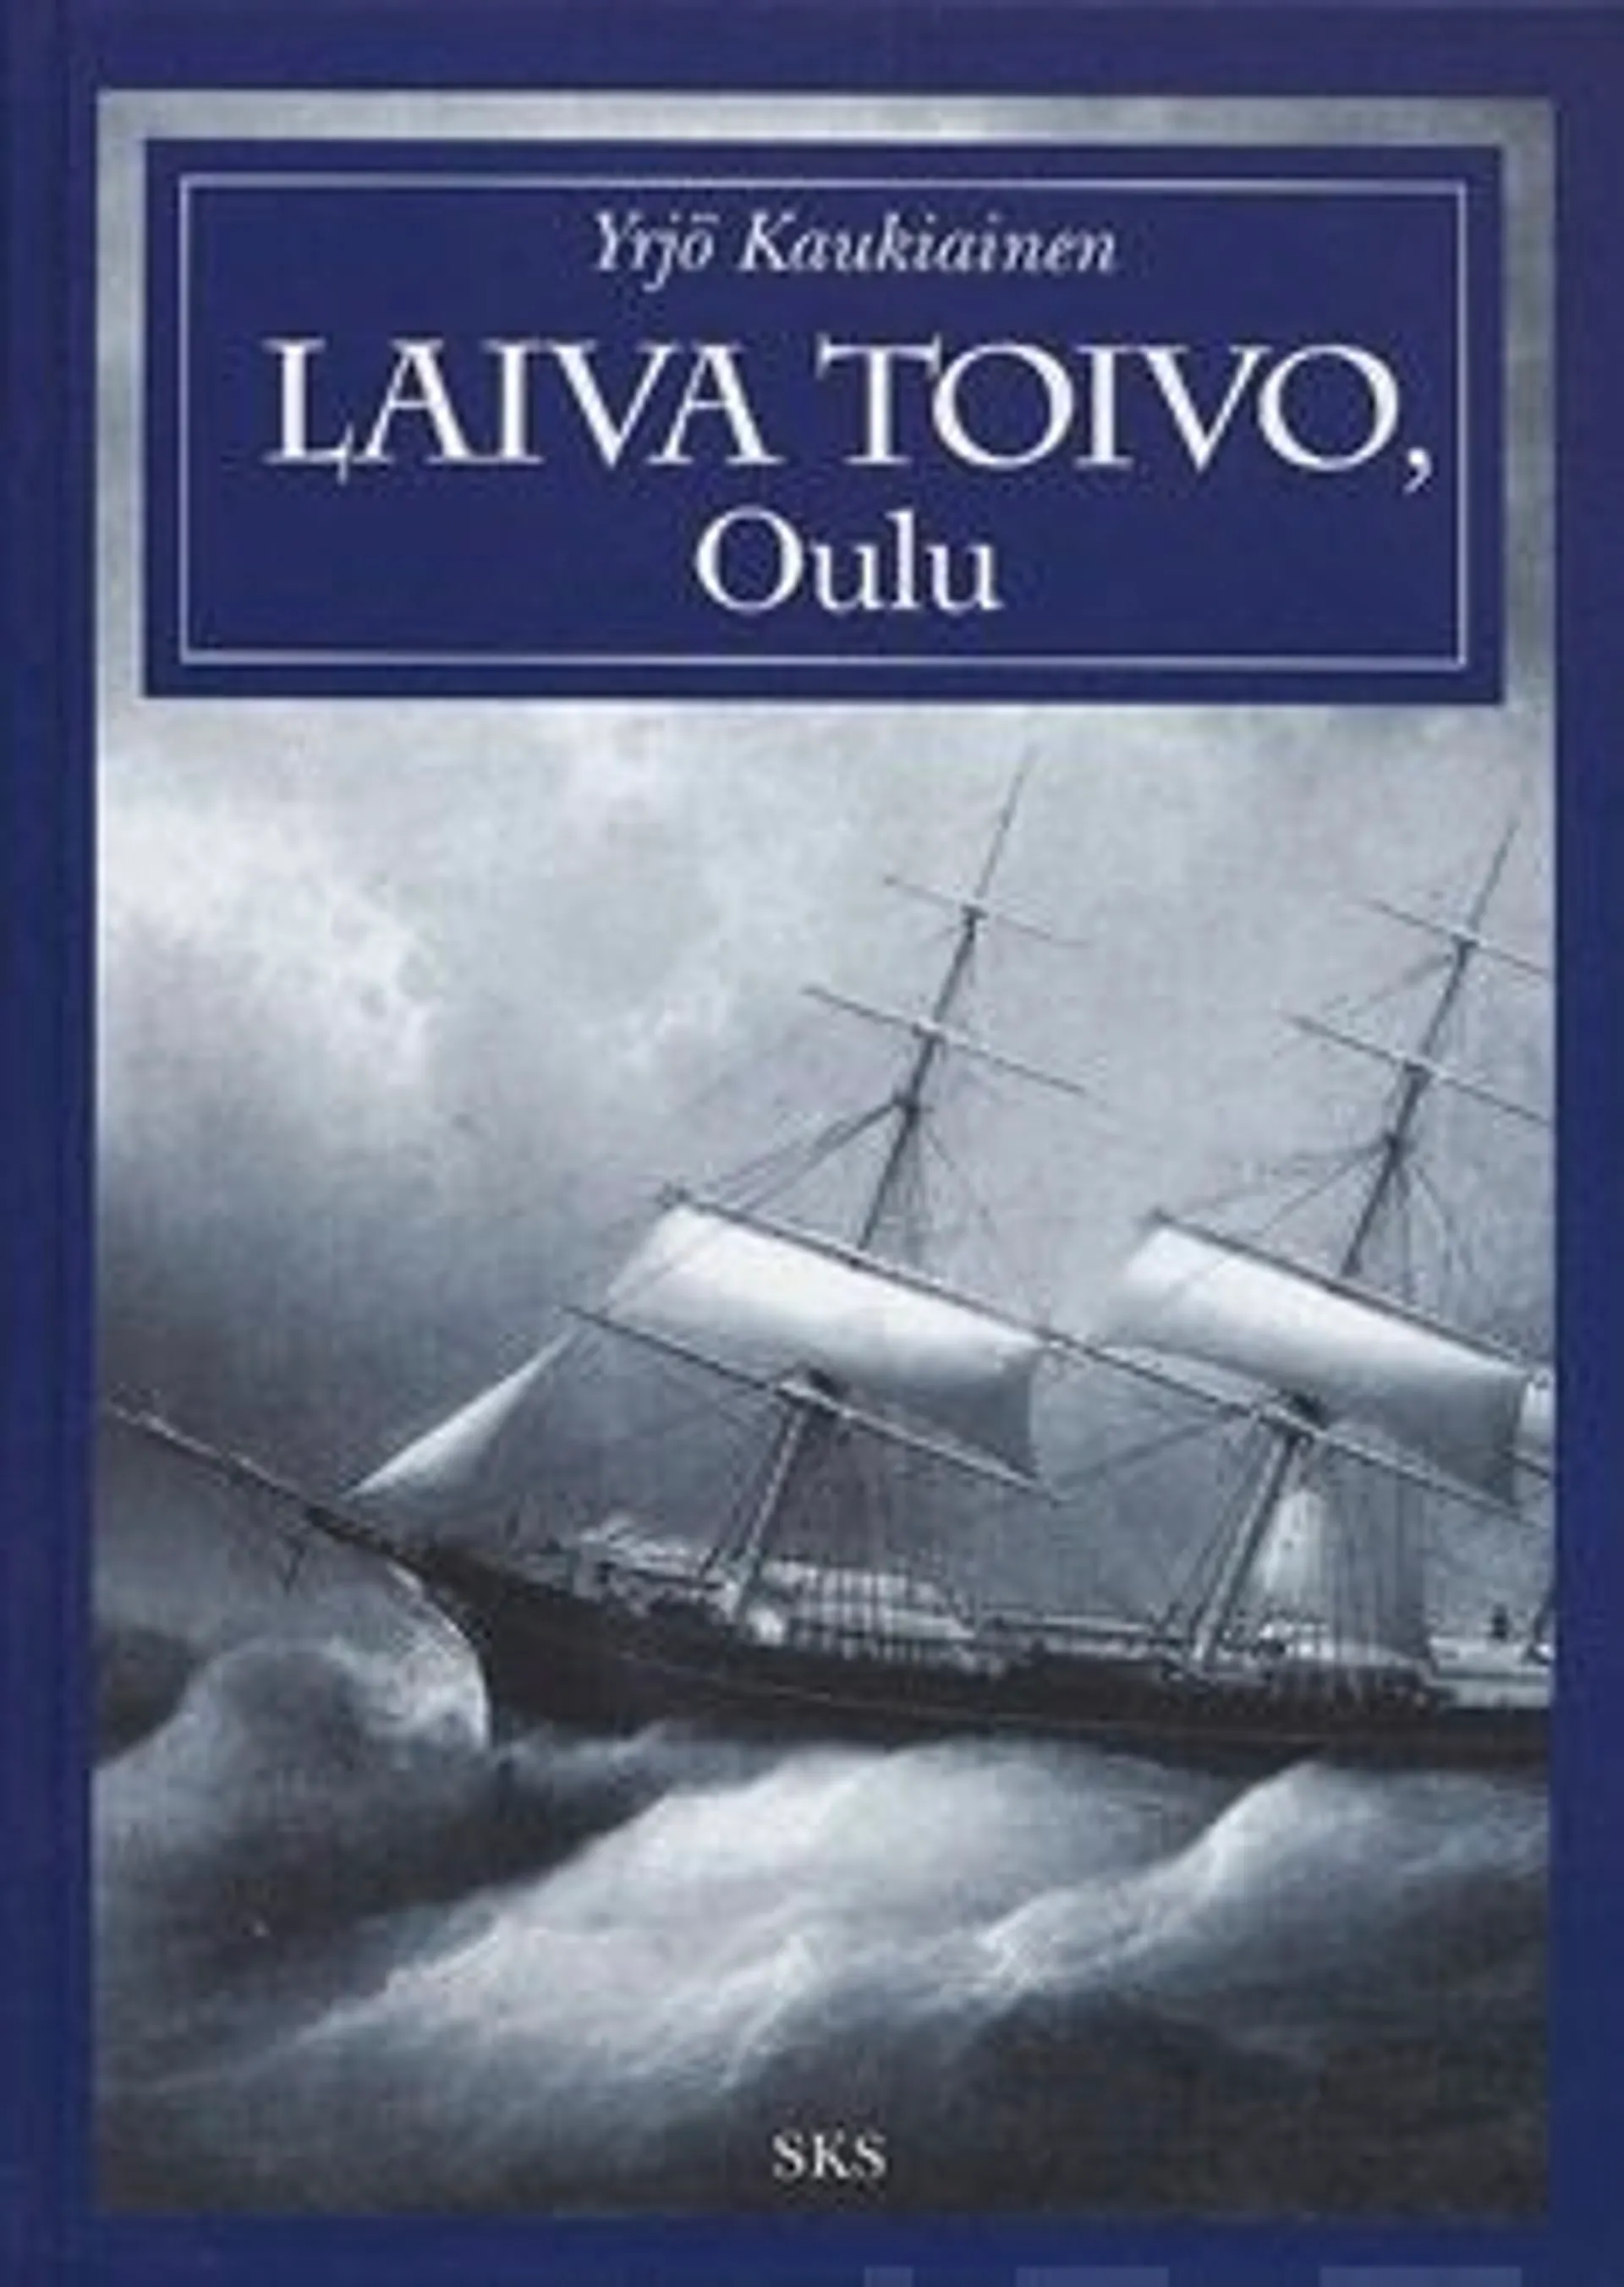 Kaukiainen, Laiva Toivo, Oulu